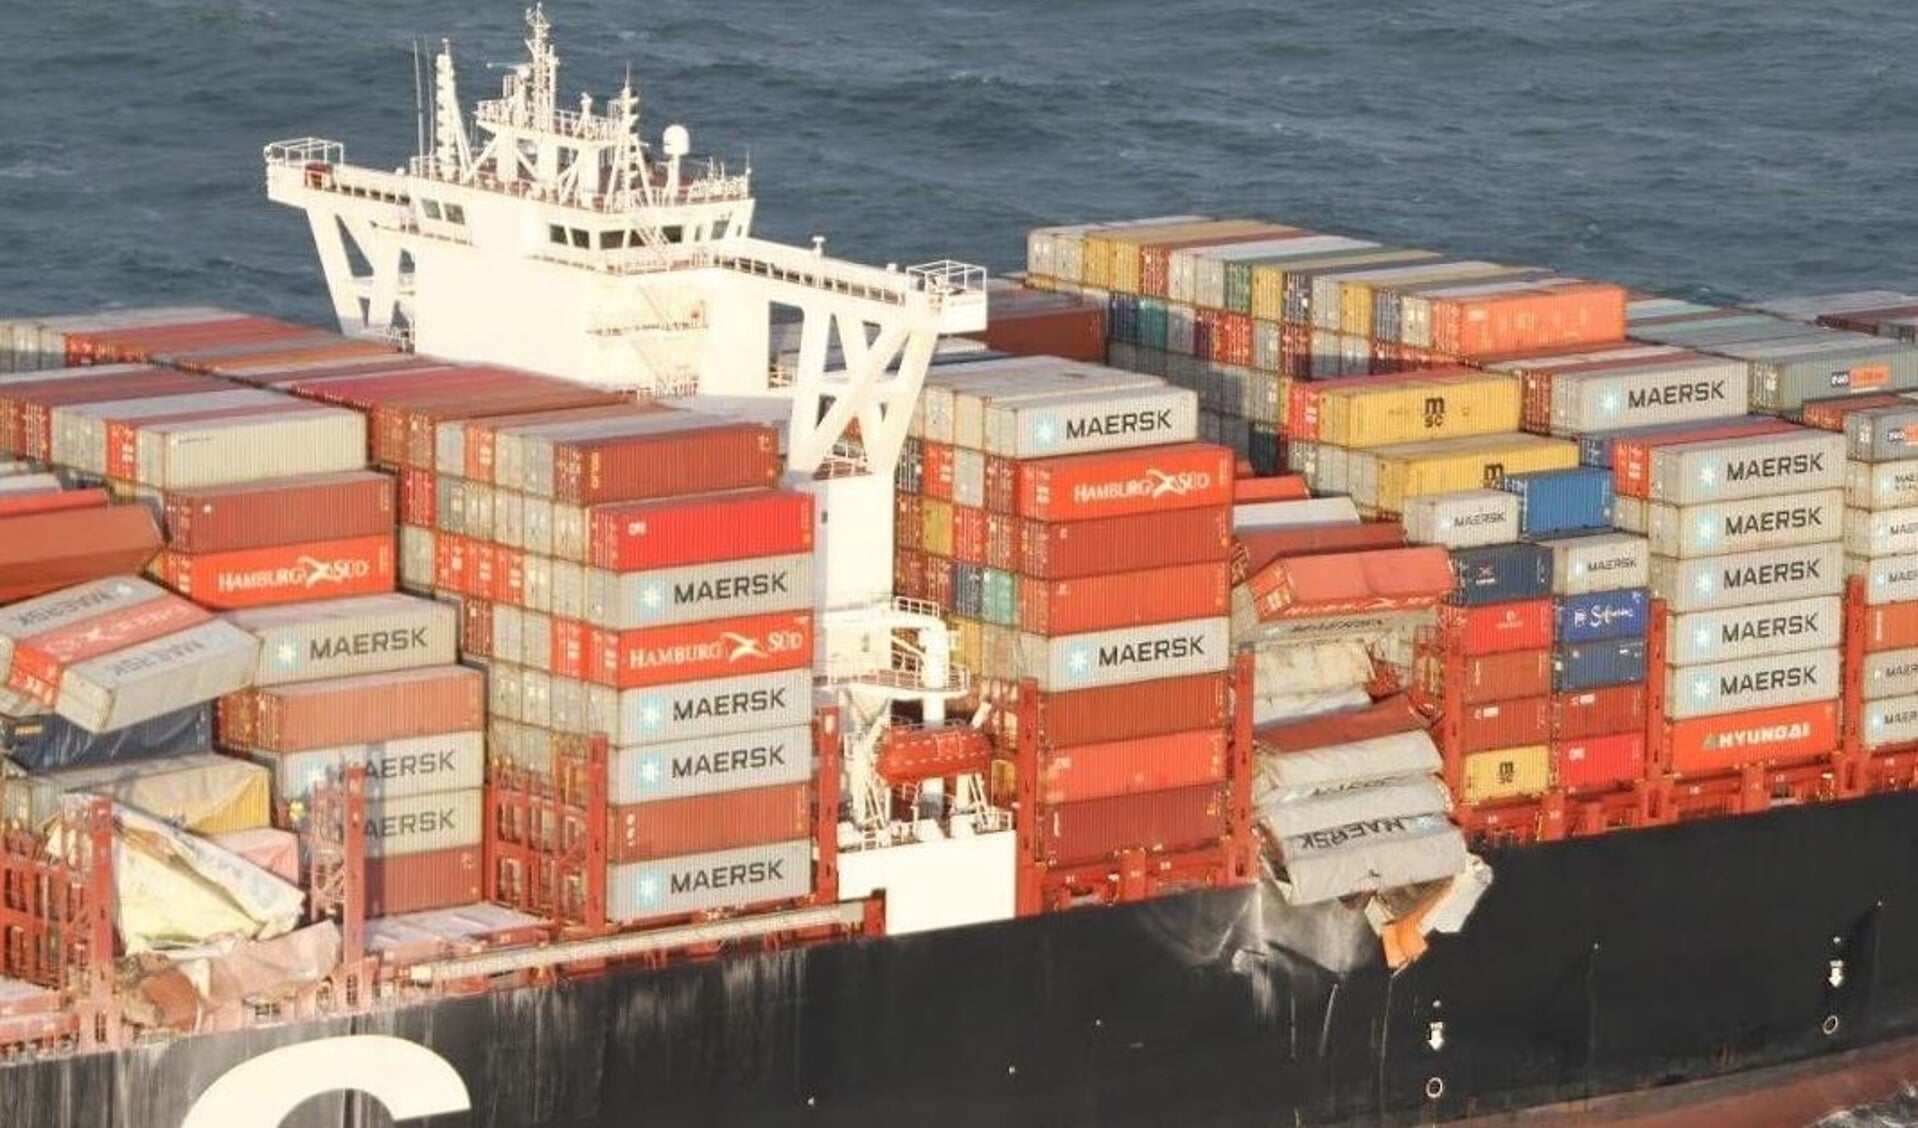 Foto van de MSC Zoë waarop te zien is dat er een serie containers overboord zijn gegaan.